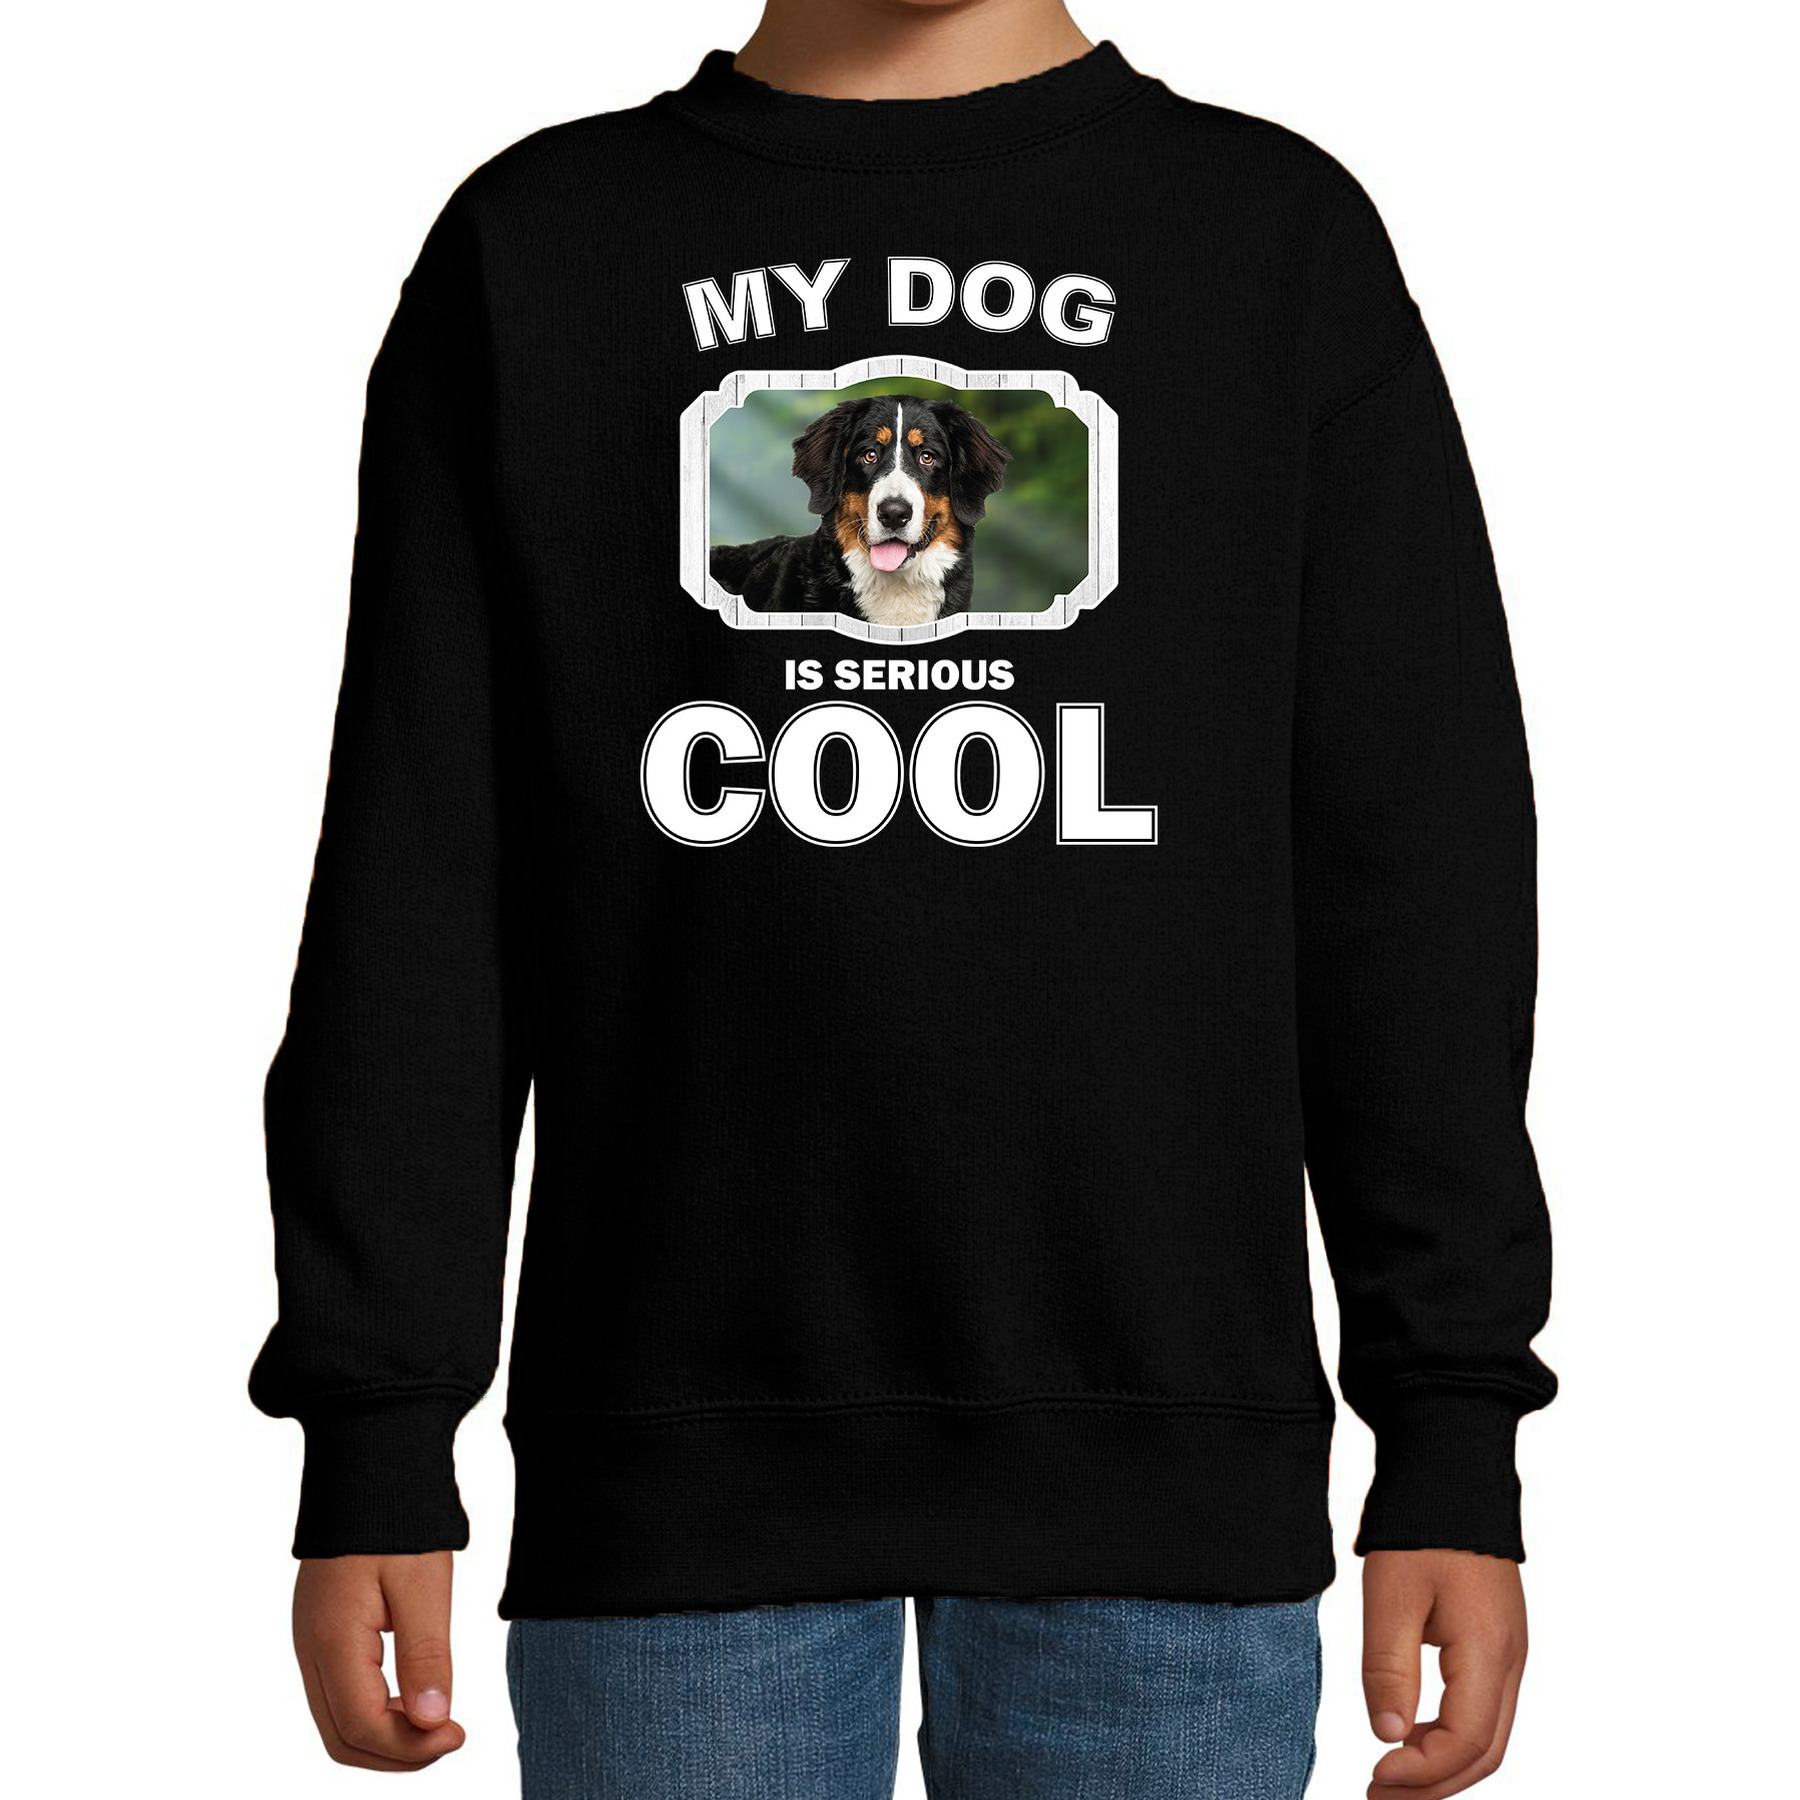 Berner sennen honden trui-sweater my dog is serious cool zwart voor kinderen